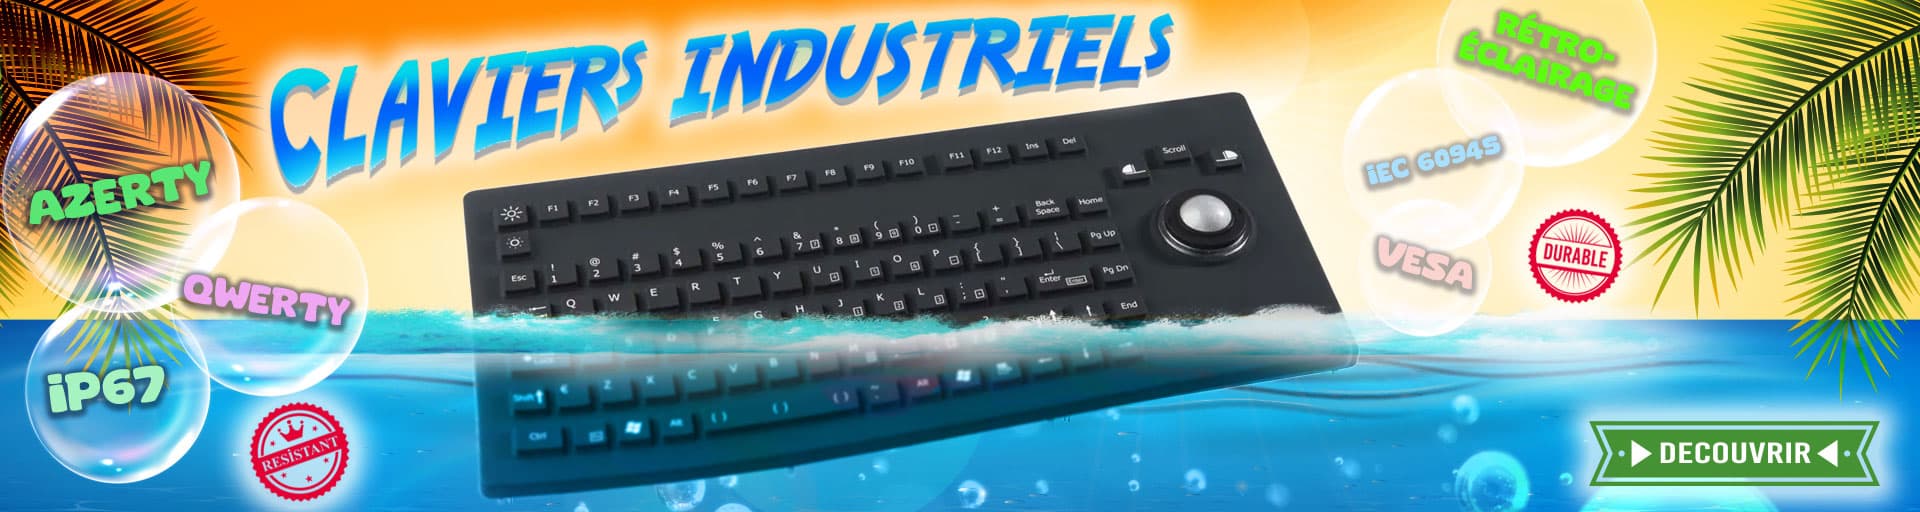 Découvrez notre gamme de claviers industriels durables et étanches !